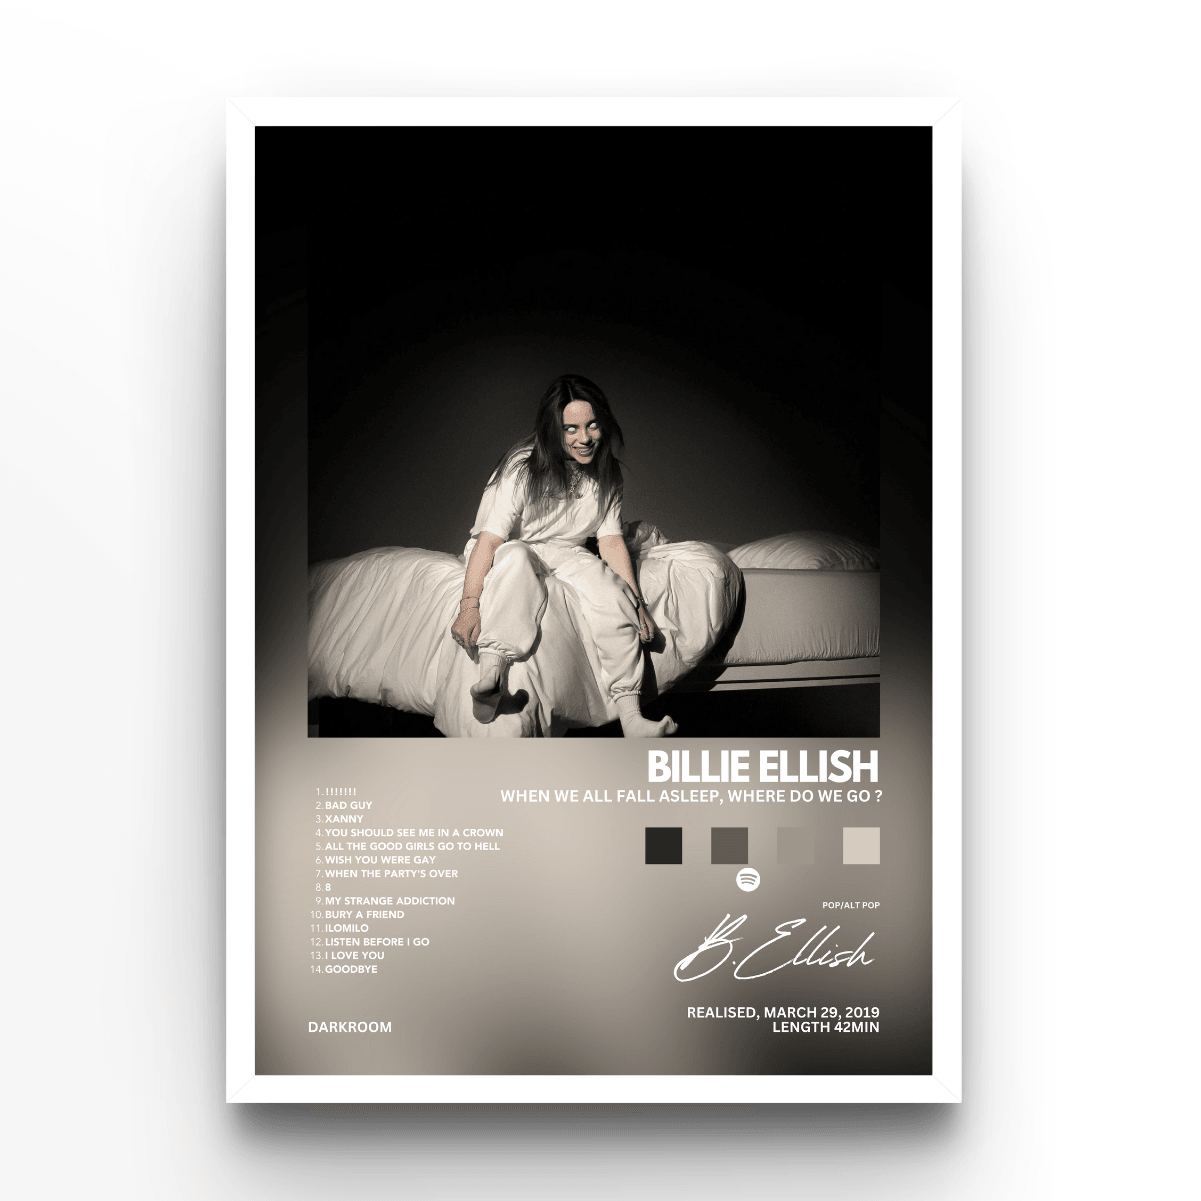 Billie Ellish Album - A4, A3, A2 Posters Base - Poster Print Shop / Art Prints / PostersBase